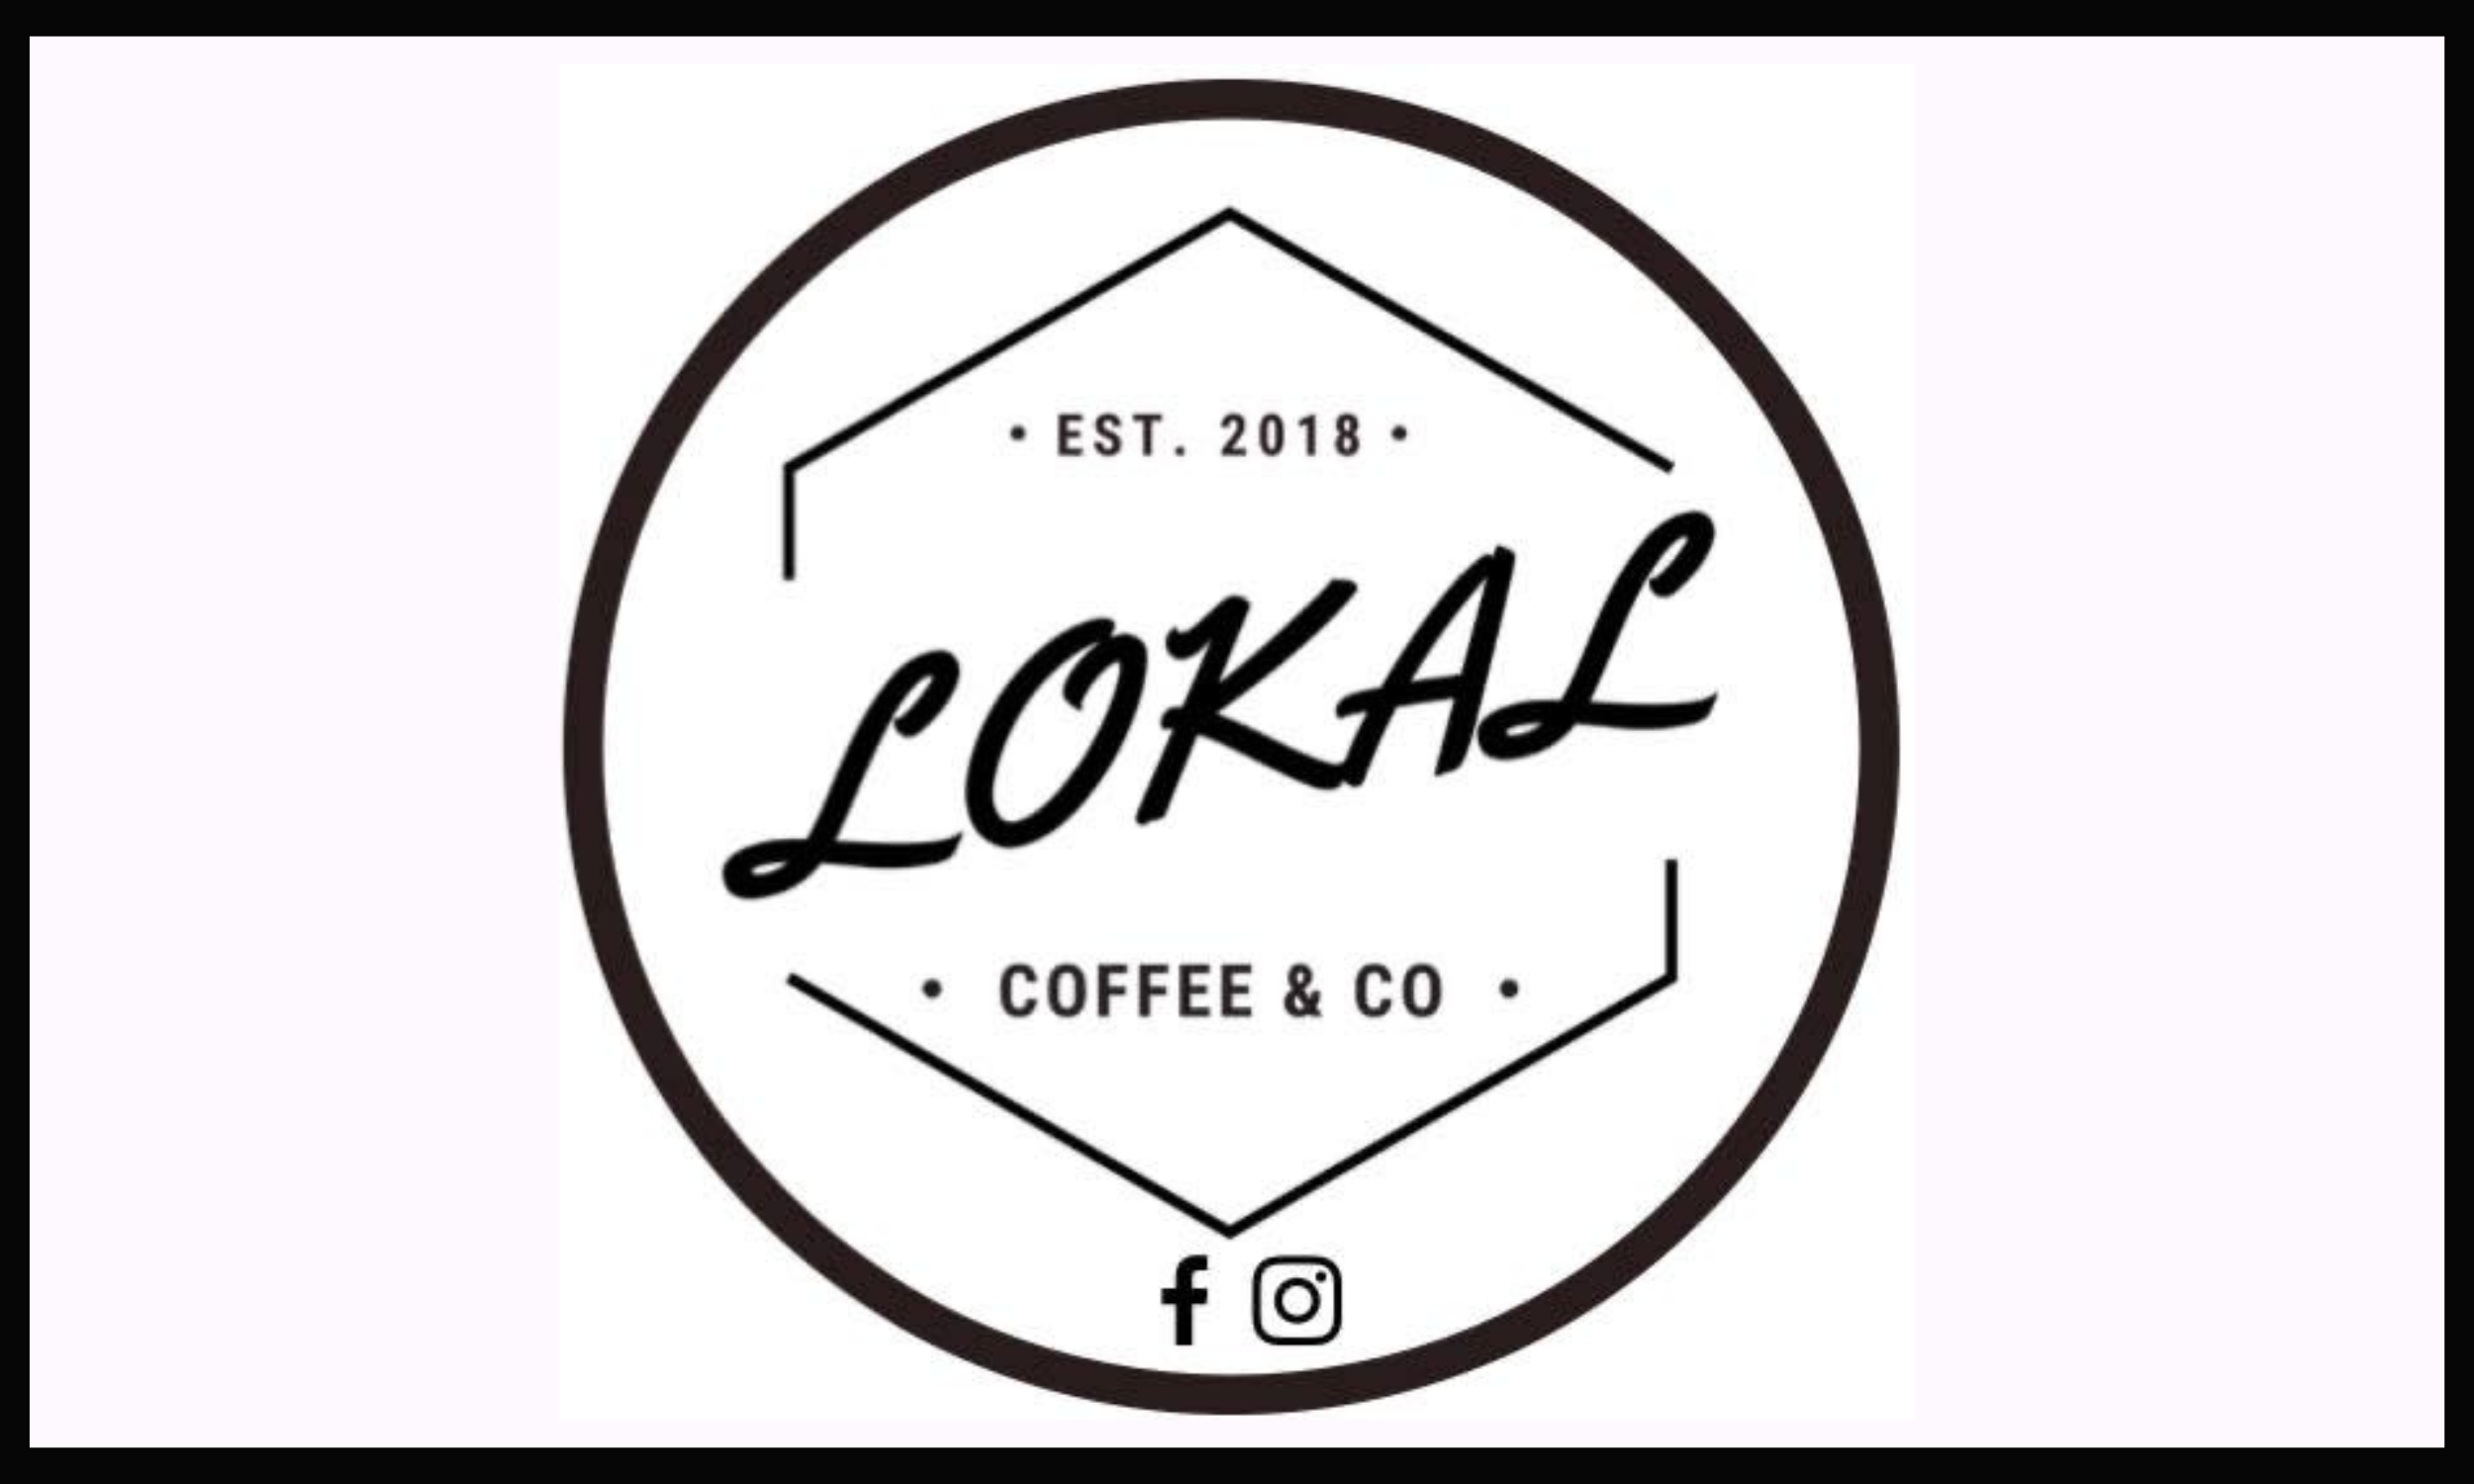 Lokal Coffee